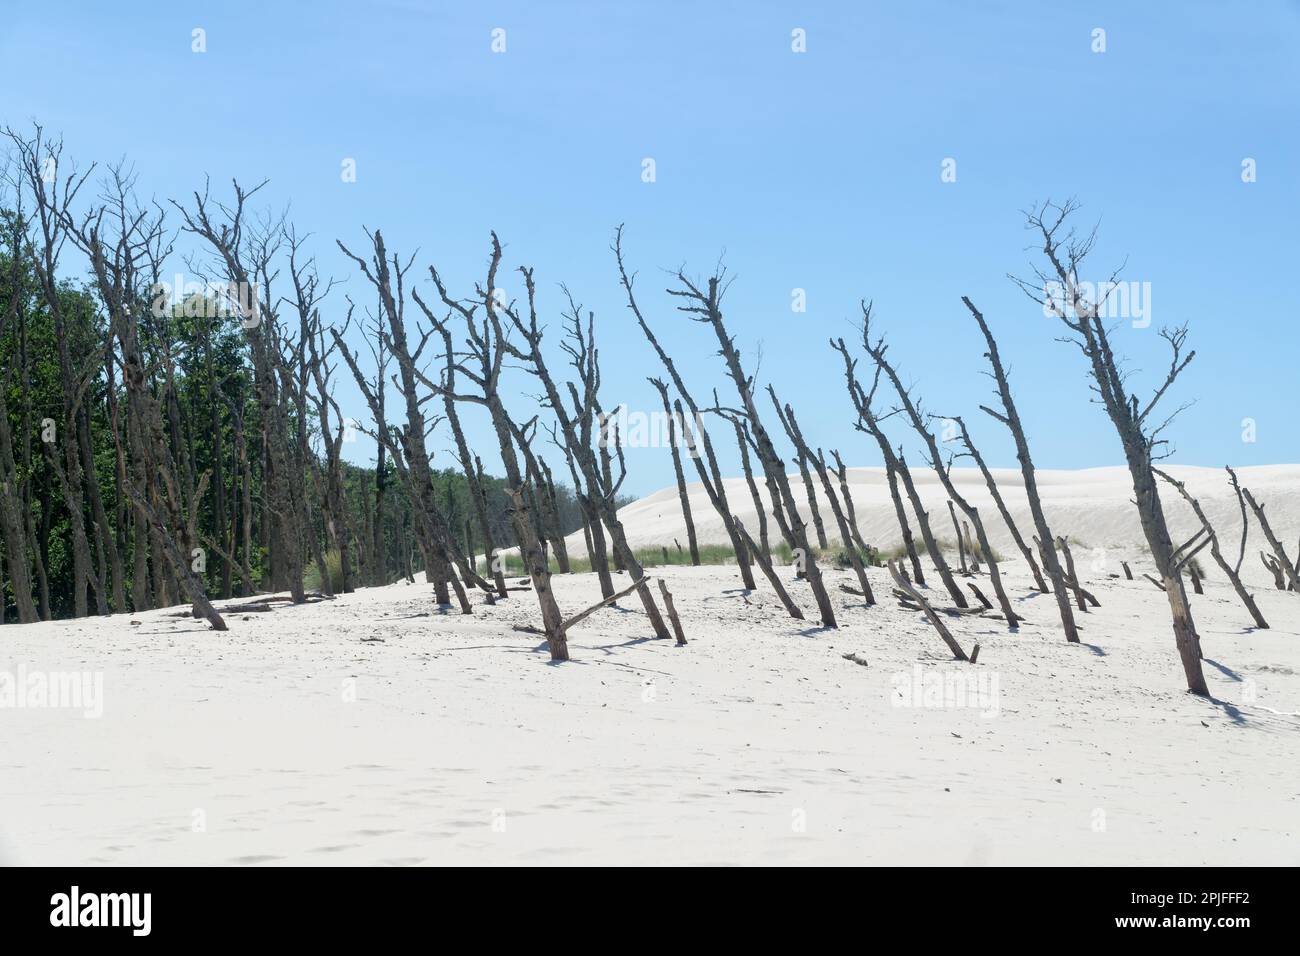 Toter Wald auf der Lacka-Düne im Slowiński-Nationalpark, Leba, Polen. Wanderung durch Sanddünen, die den Wald absorbieren. Sonniger Sommertag, Sand und blaue Stange Stockfoto